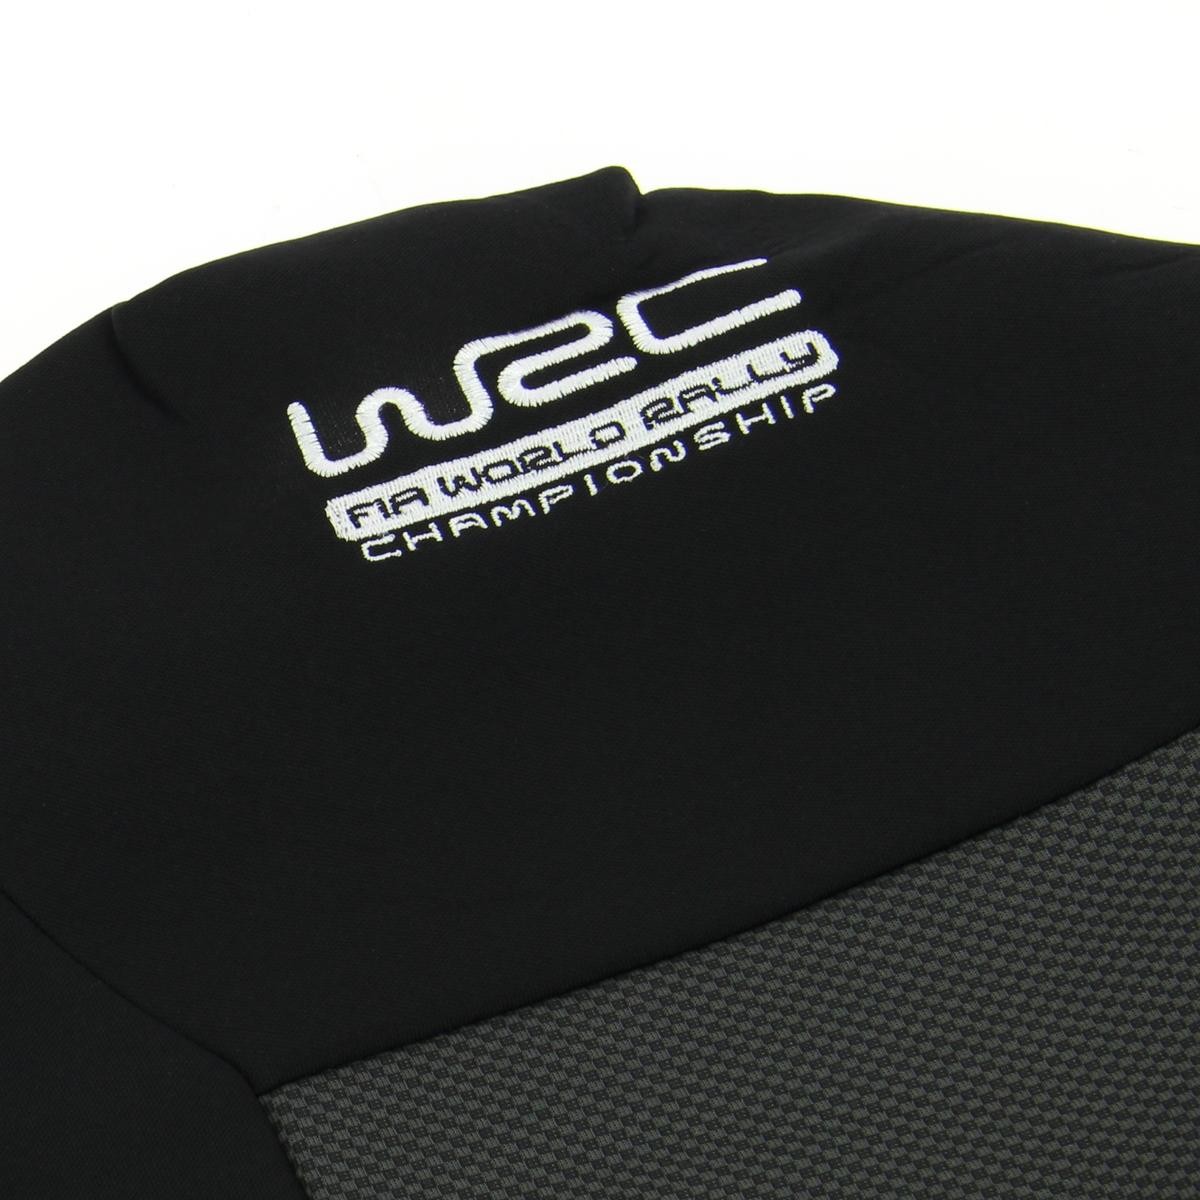 007590 WRC Autositzbezug schwarz, Mit Motiv, Polyester, vorne und hinten  007590 ❱❱❱ Preis und Erfahrungen